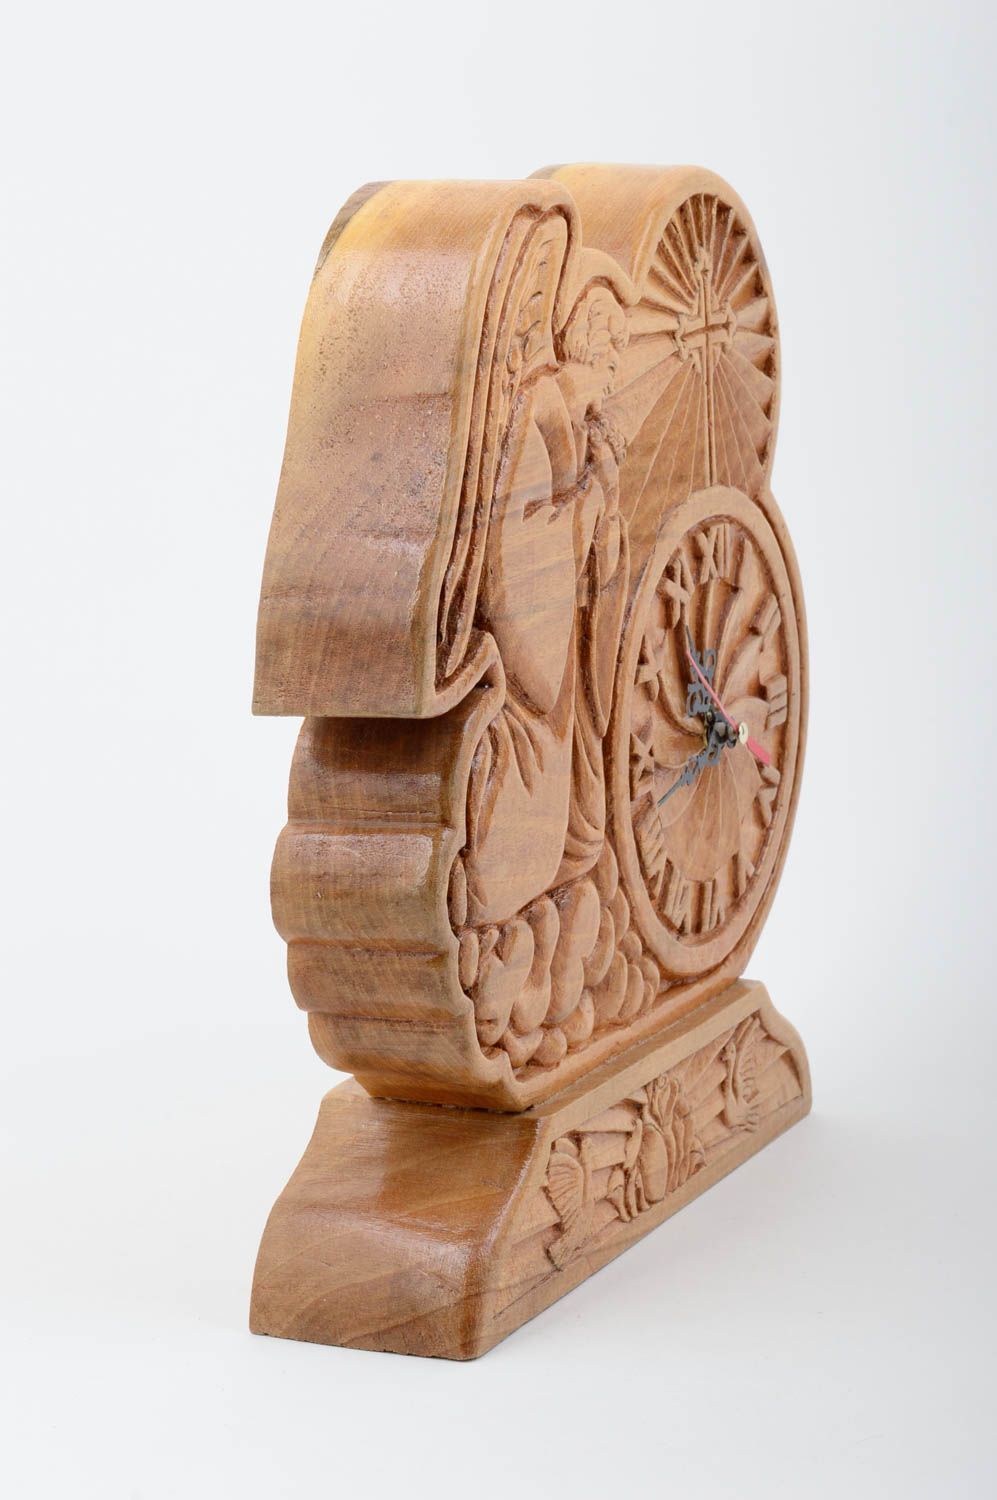 Tisch Uhr Handmade Deko Uhr aus Holz ungewöhnliche Uhr Engel geschnitzt schön foto 2